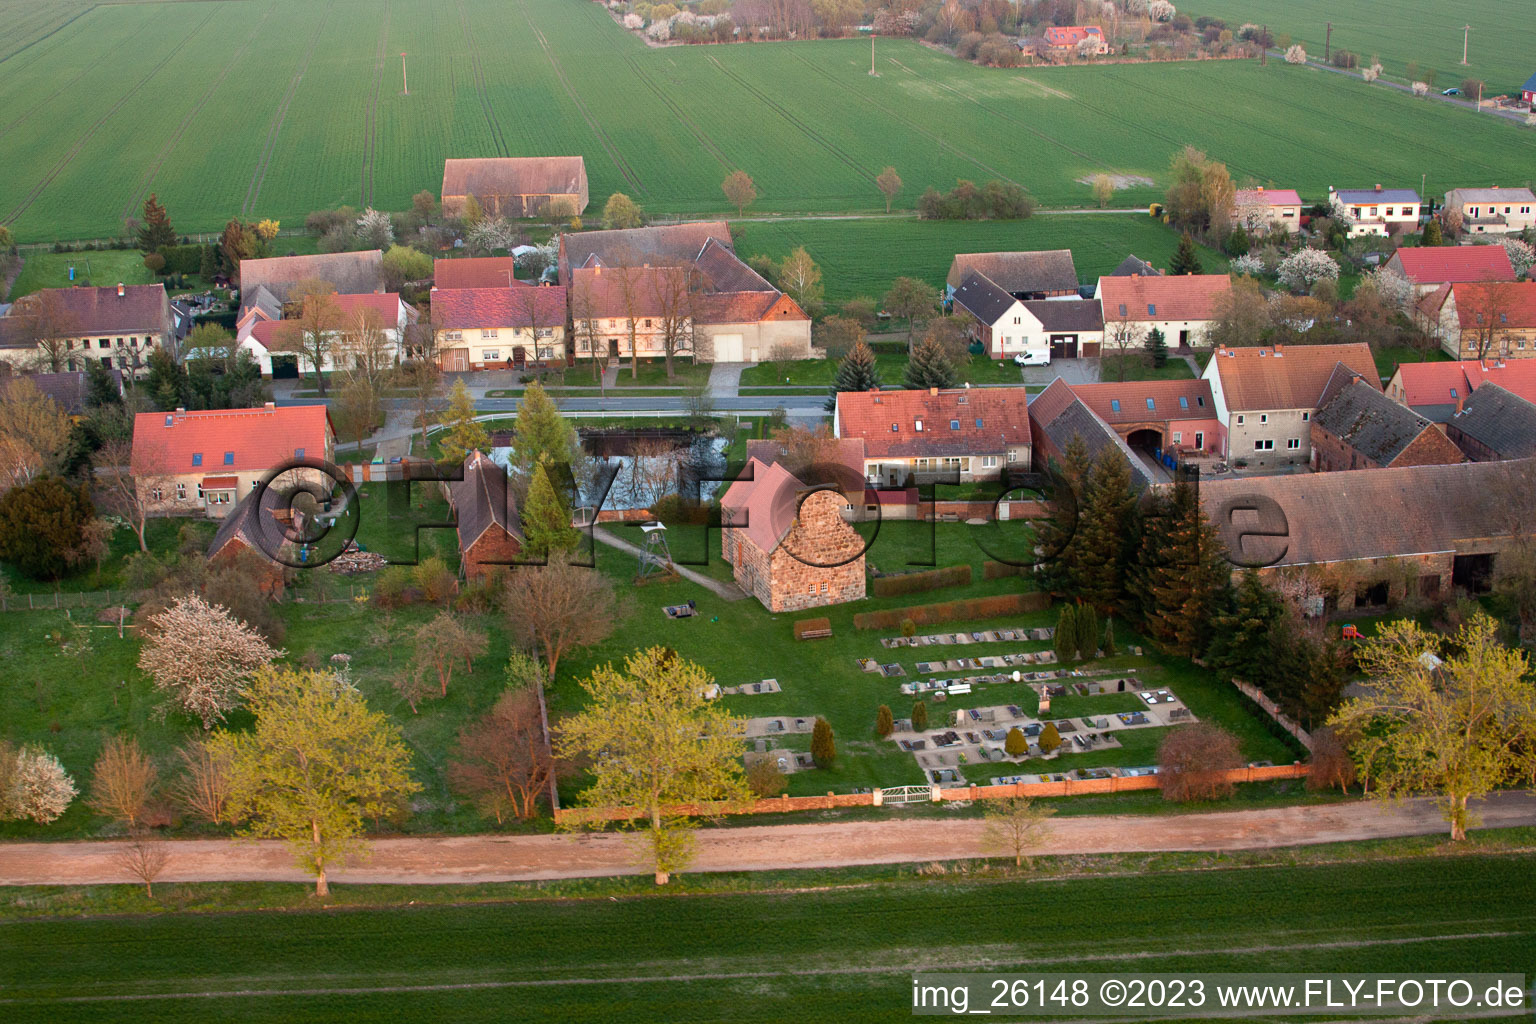 Bâtiment d'église au centre du village à Niederer Fläming dans le département Brandebourg, Allemagne vue d'en haut